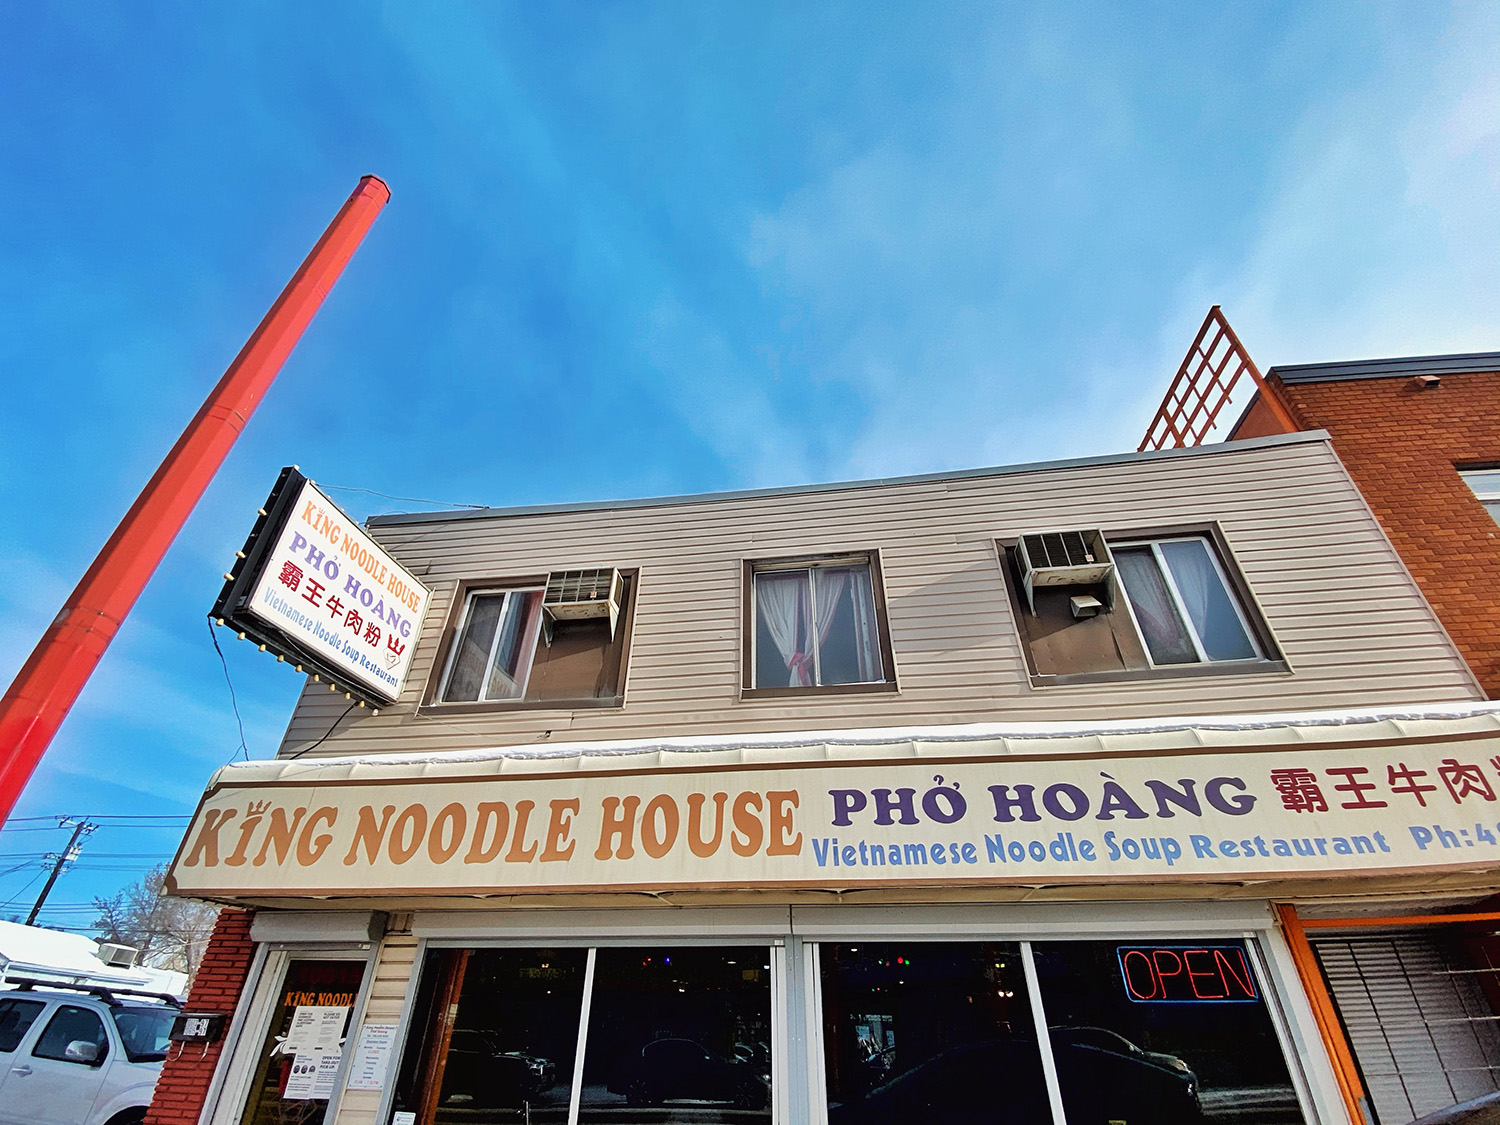 King Noodle House Pho Hoang Edmonton Vietnamese Pho Restaurant